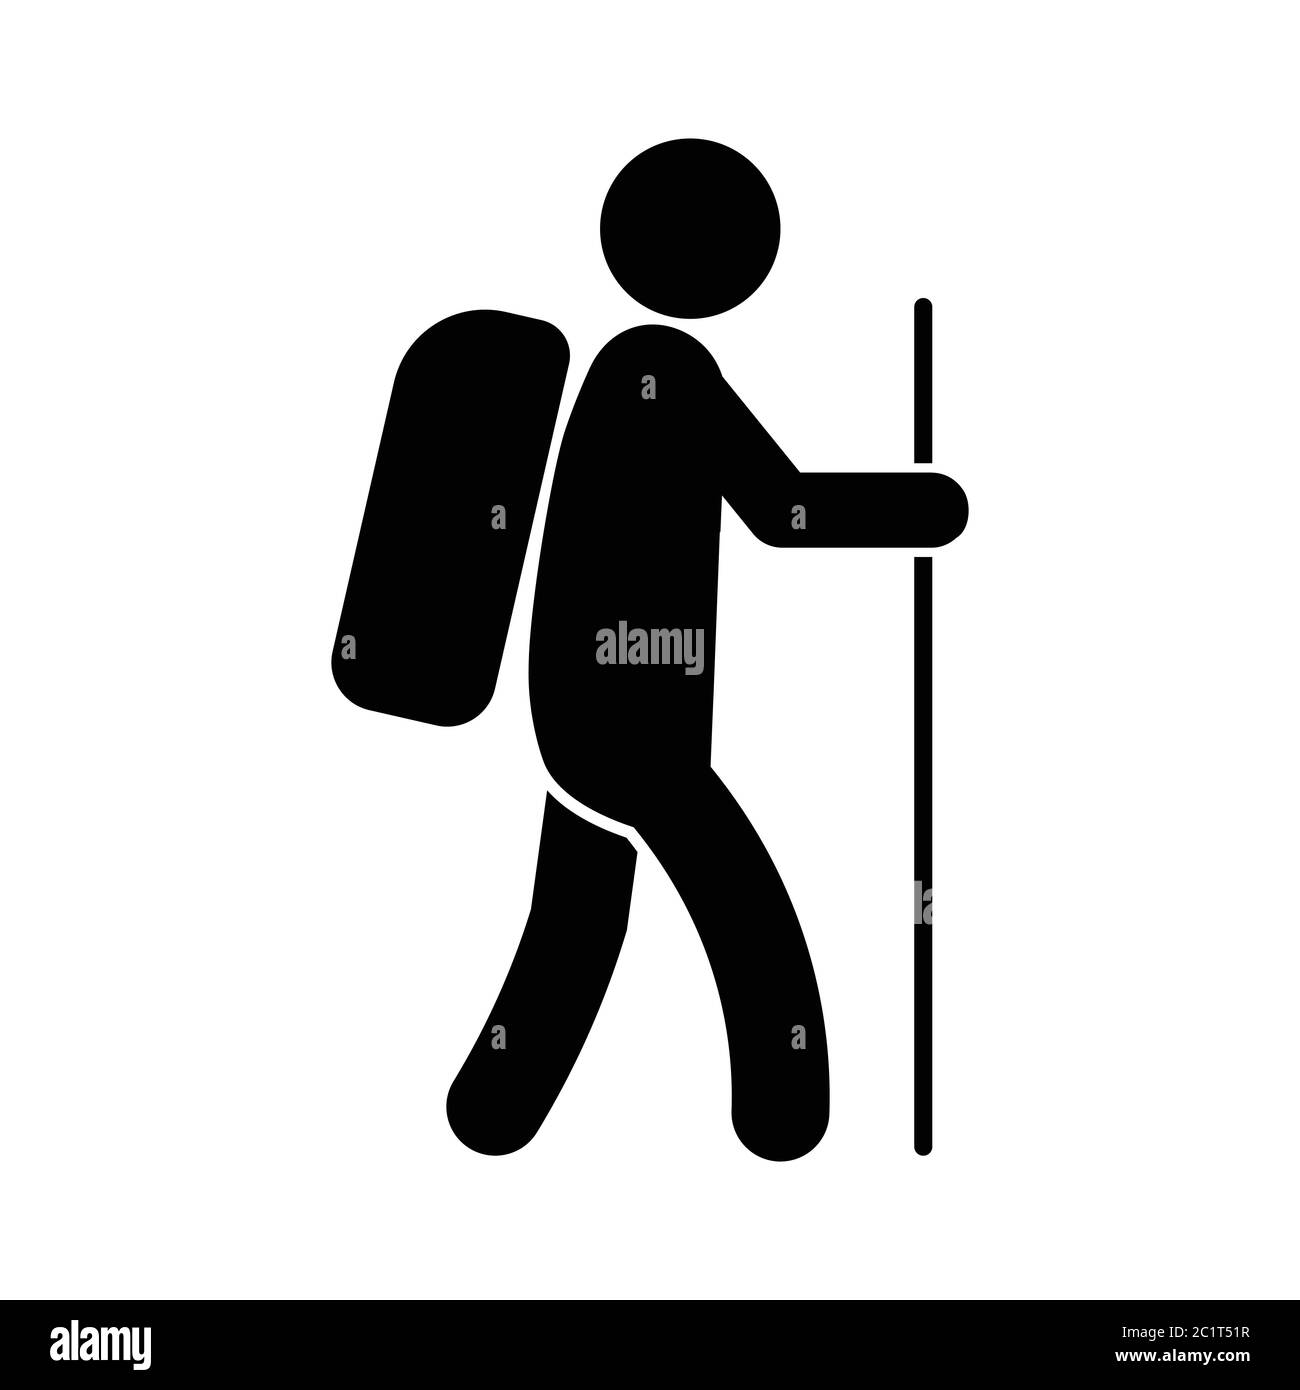 Bâton Figure Homme randonnée pédestre en tenant un bâton de marche. Illustration noire isolée sur un fond blanc. Vecteur EPS Illustration de Vecteur